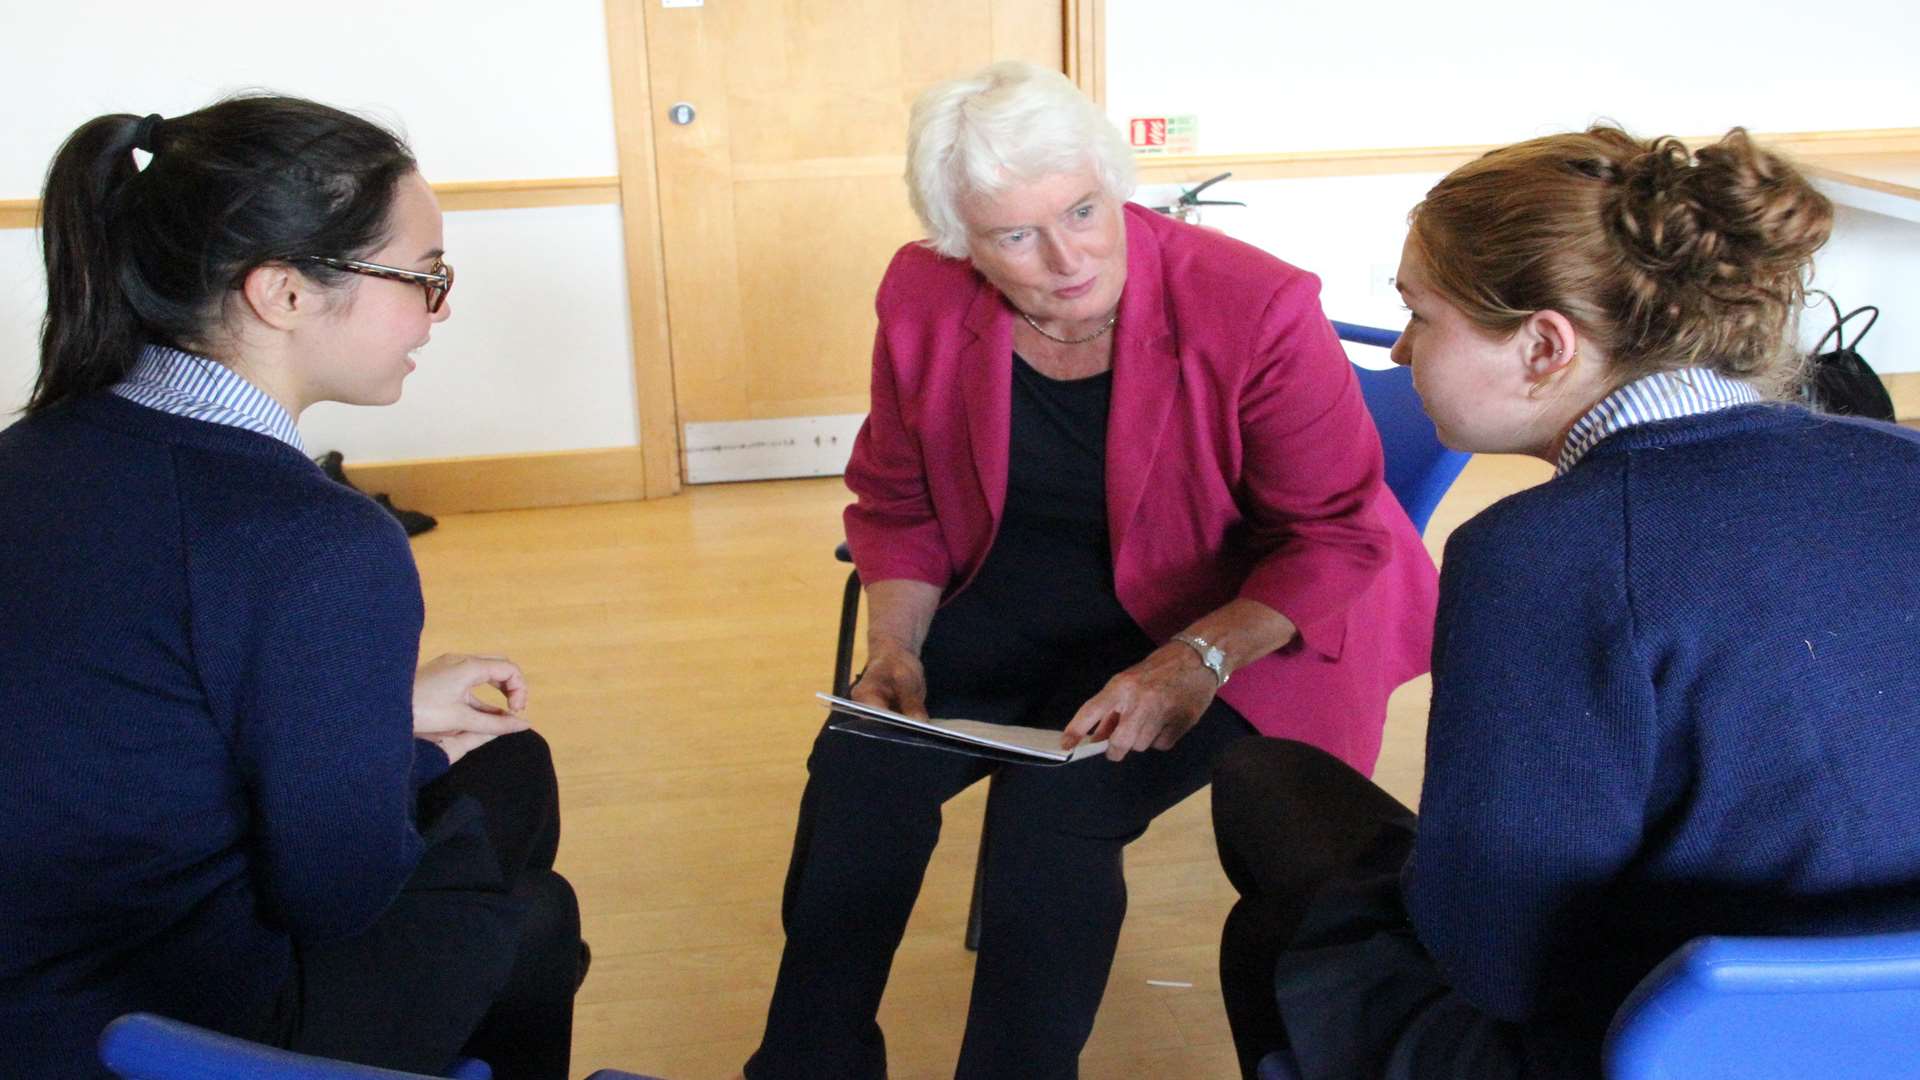 Former The Apprentice adviser Margaret Mountford offering advice to Benenden girls